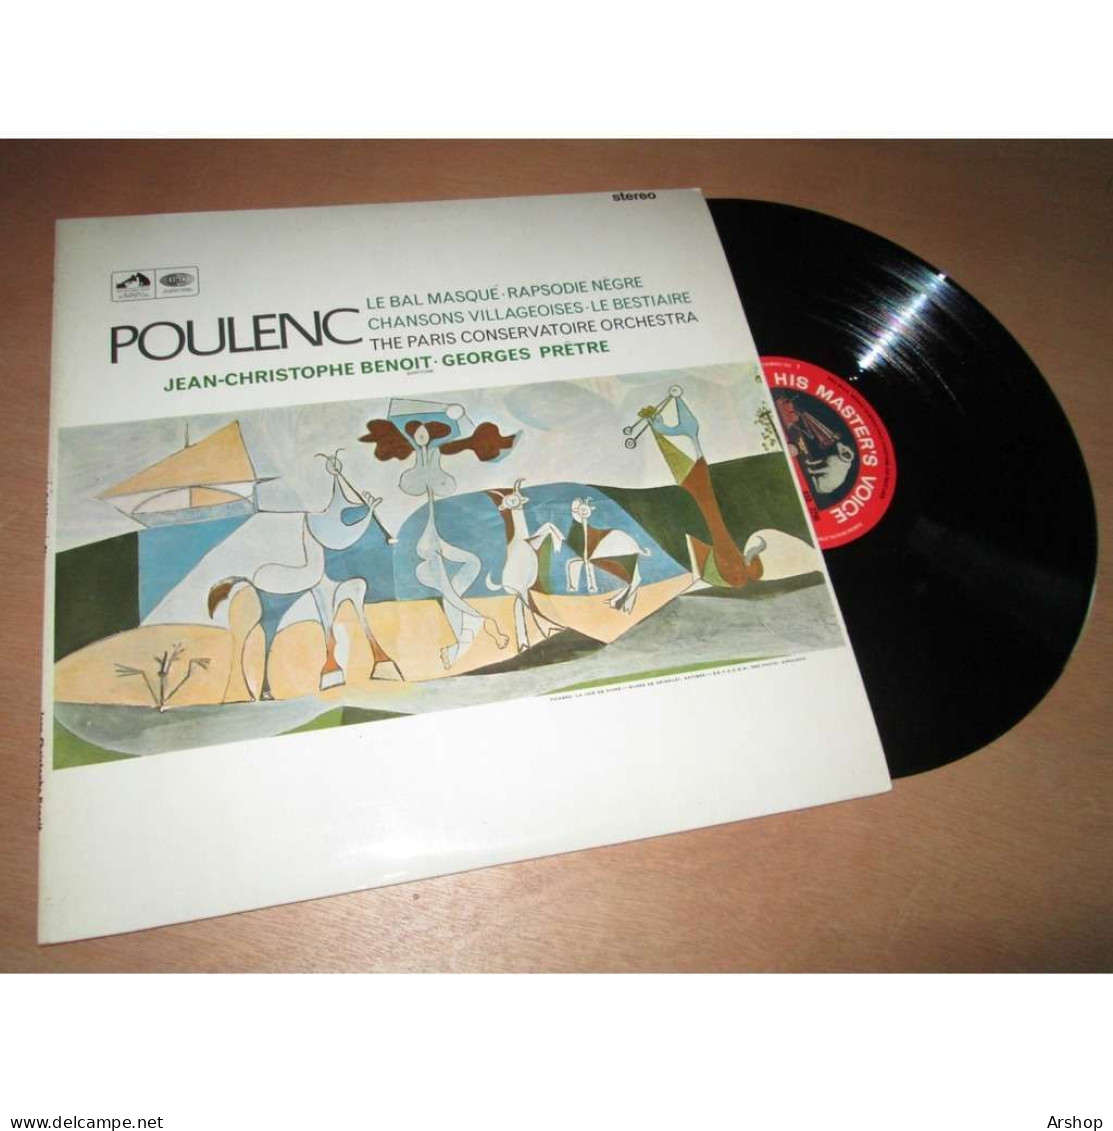 GEORGES PRETRE Le Bal Masqué - Rapsodie Negre - Le Bestiaire & POULENC - His Master Voice ASD 2296 UK Lp 1966 - Classica